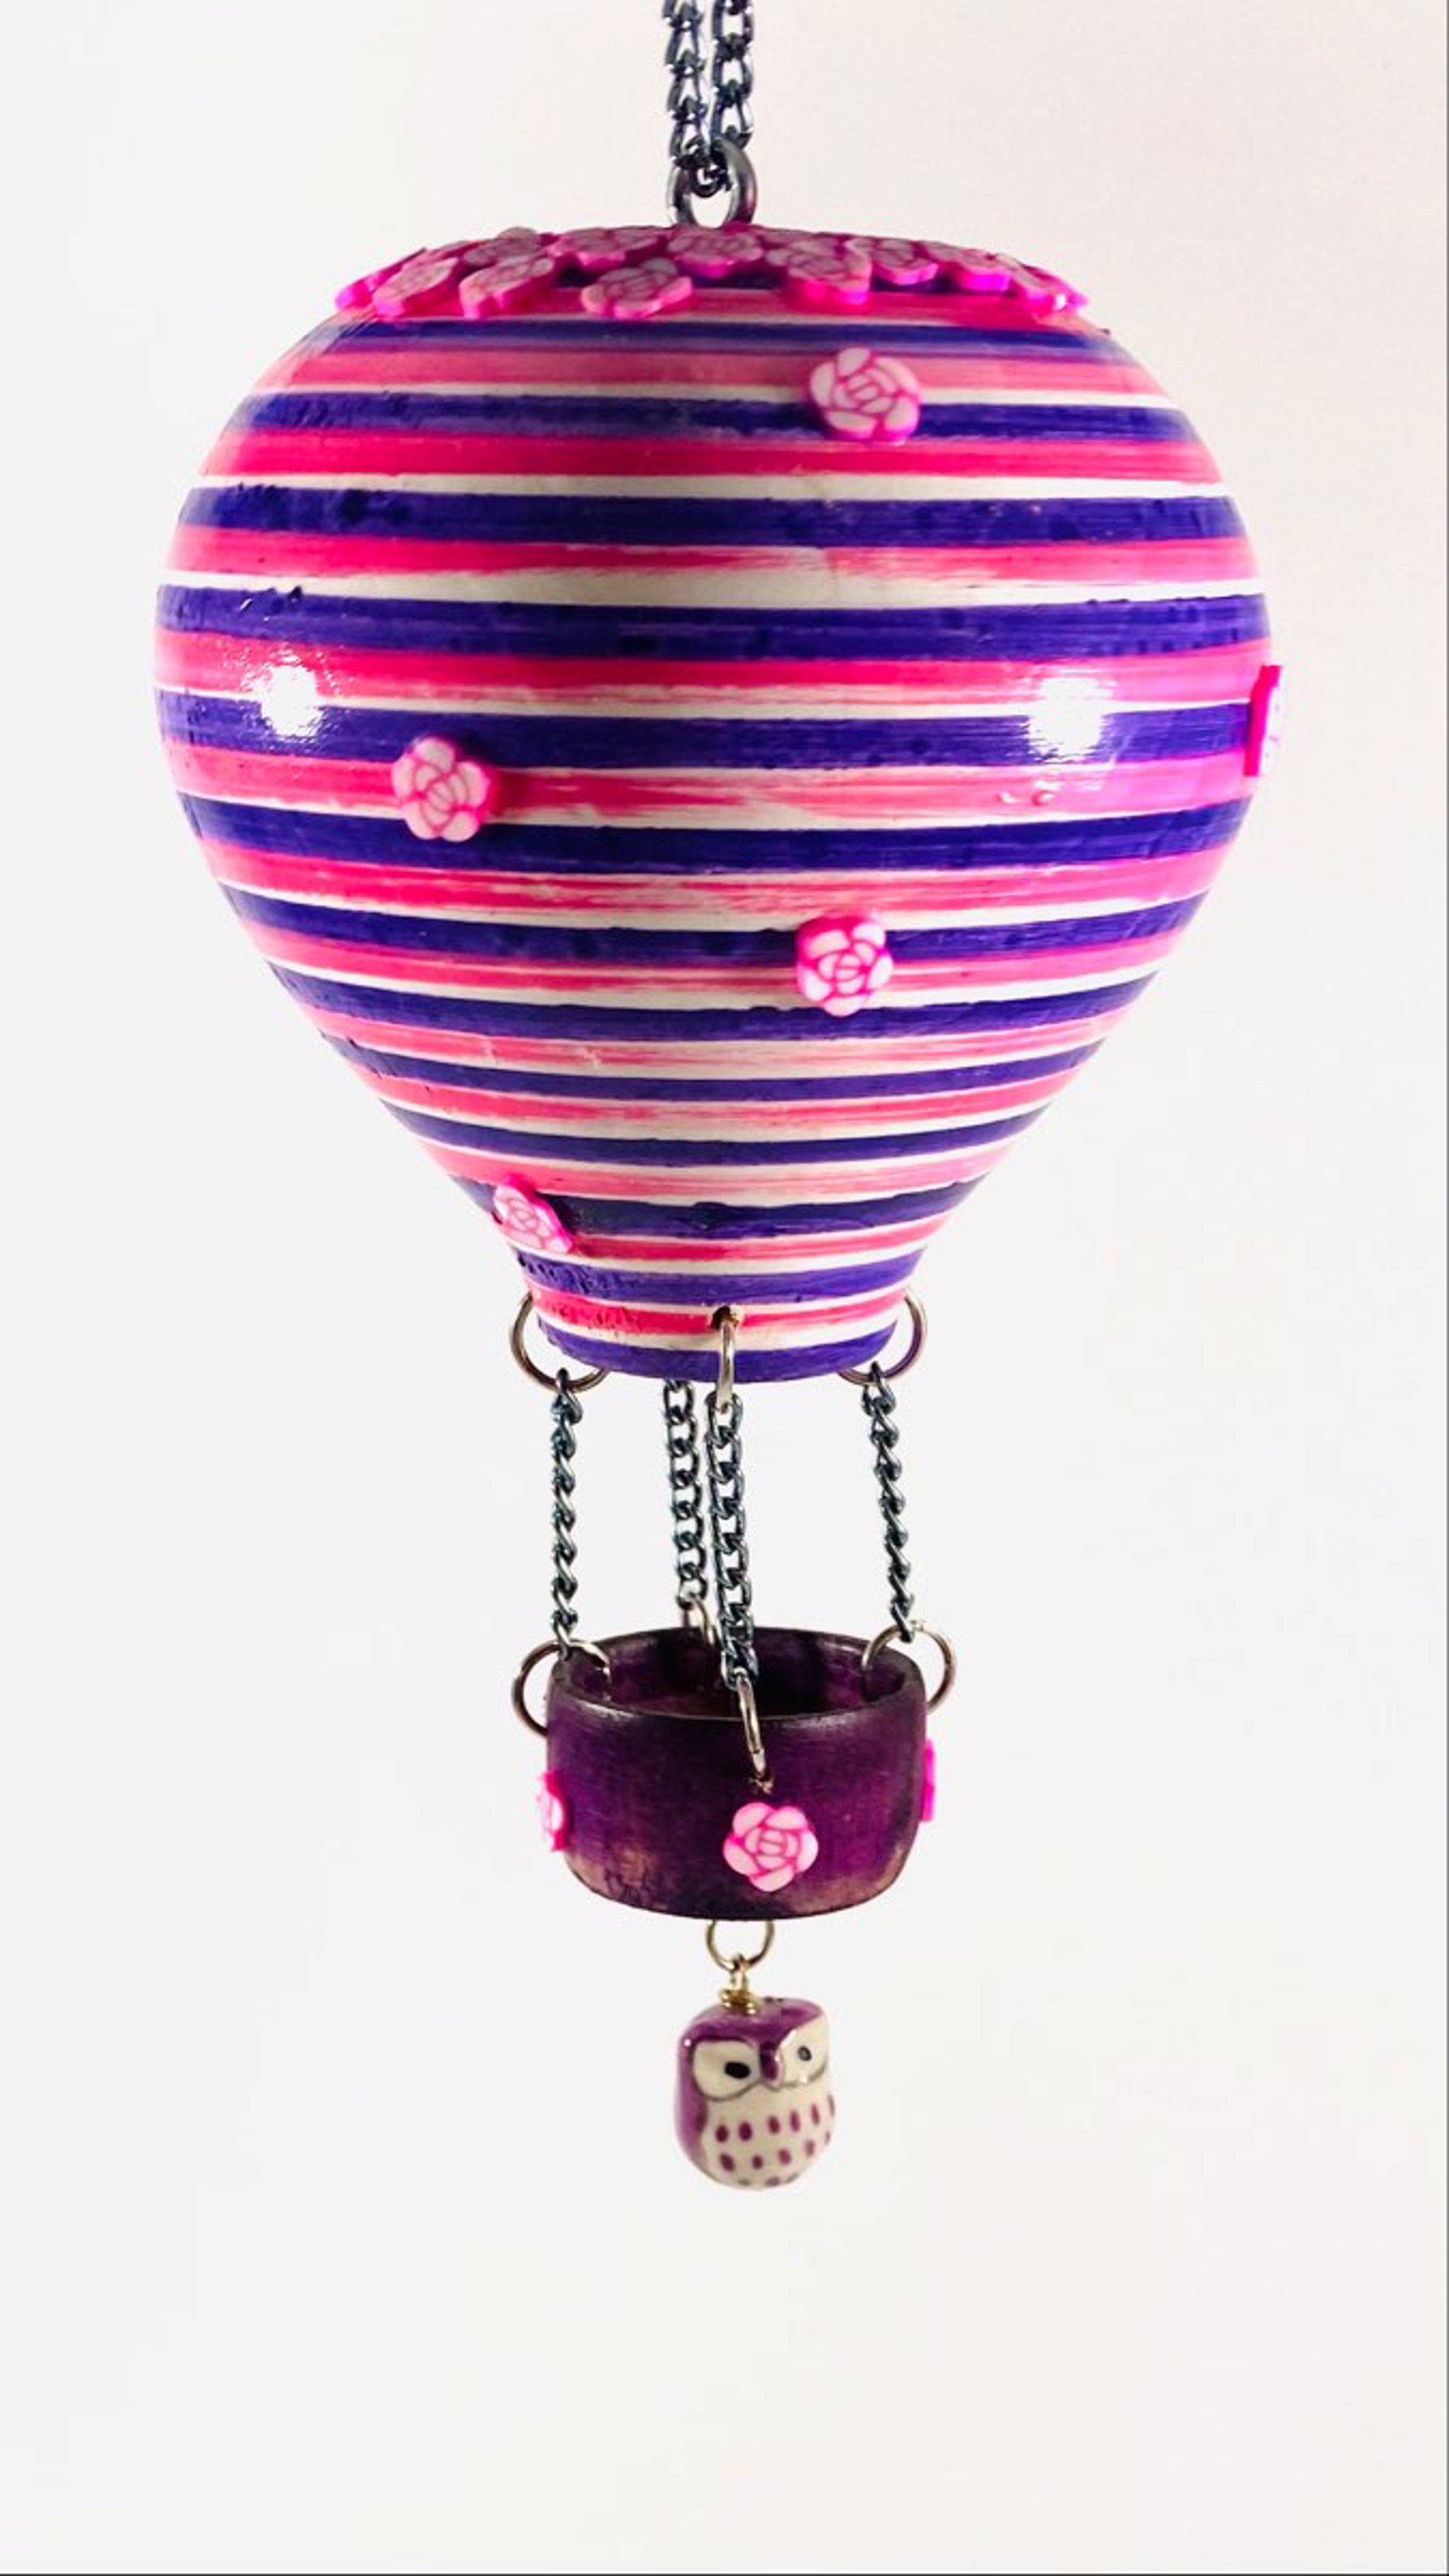 MT22-25 Whimsical Hot Air Balloon Ornament by Marc Tannenbaum